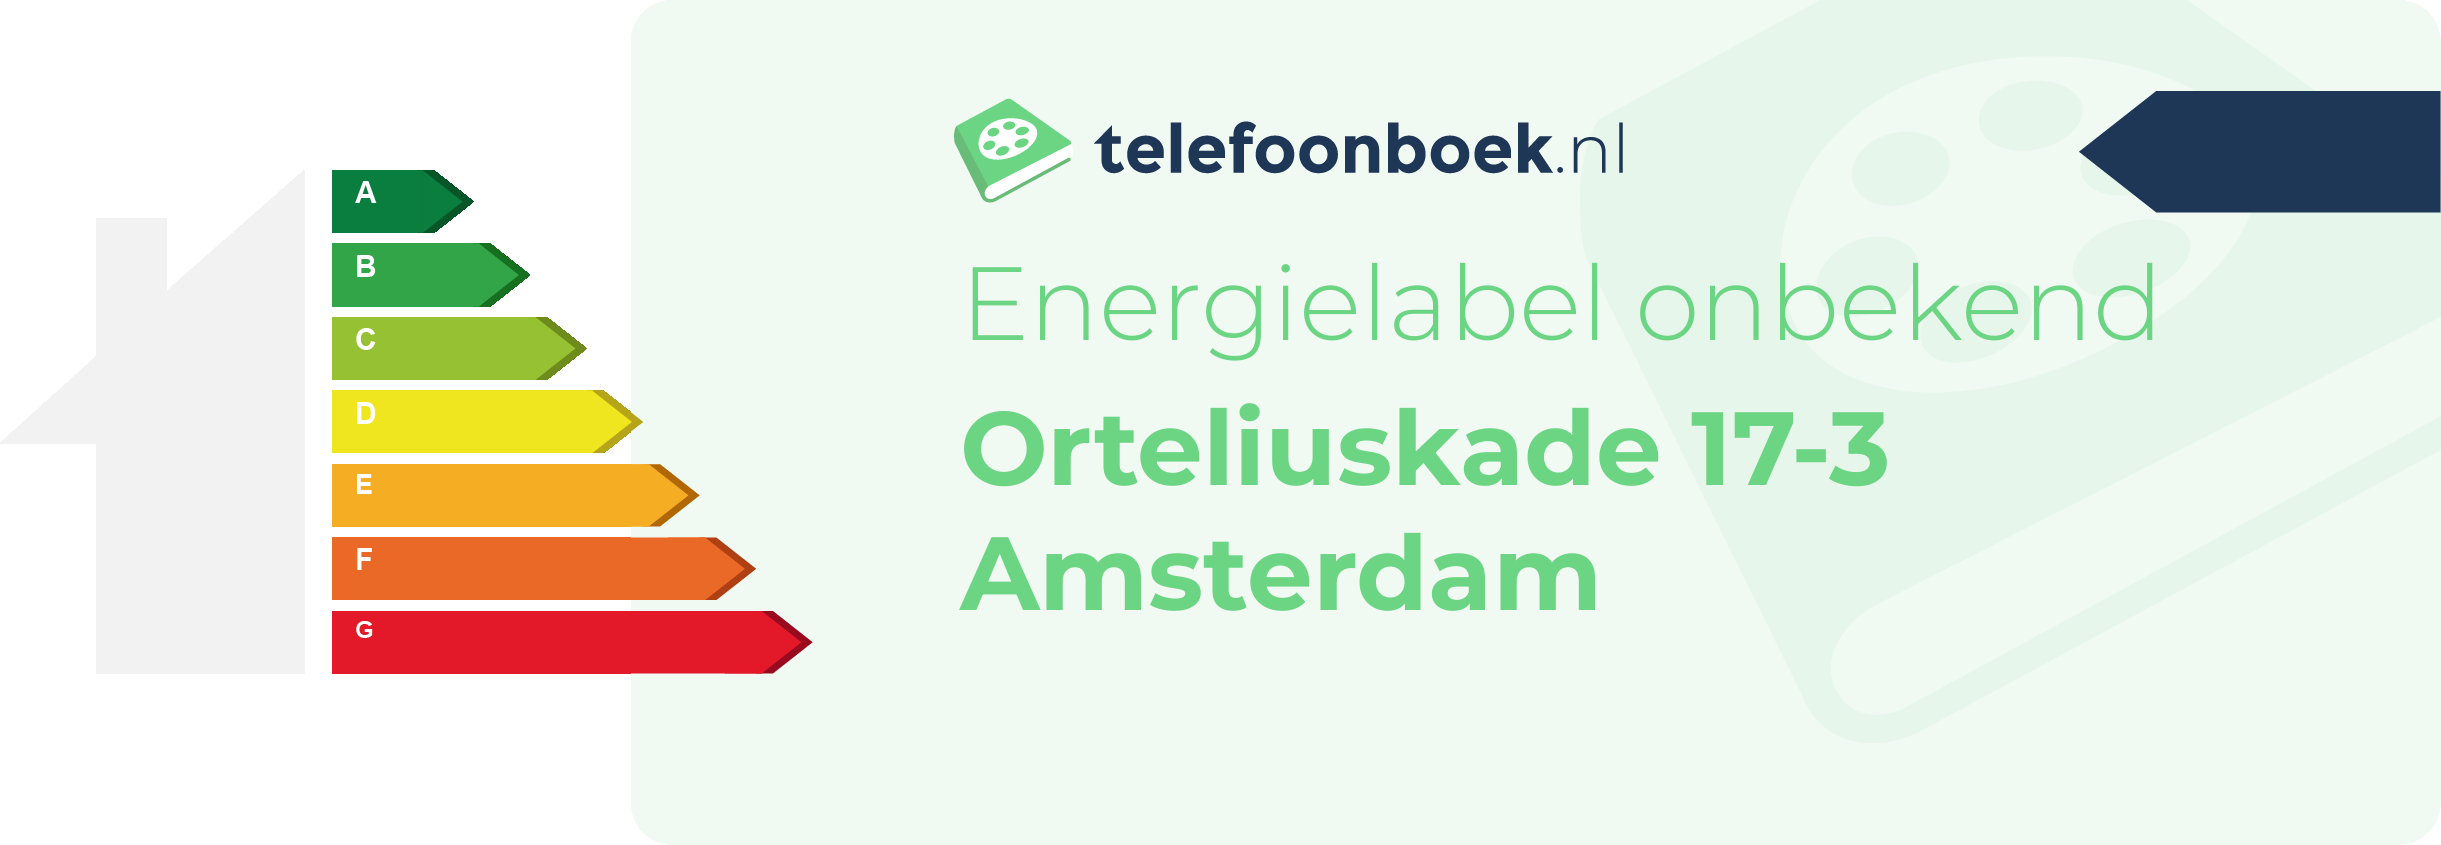 Energielabel Orteliuskade 17-3 Amsterdam